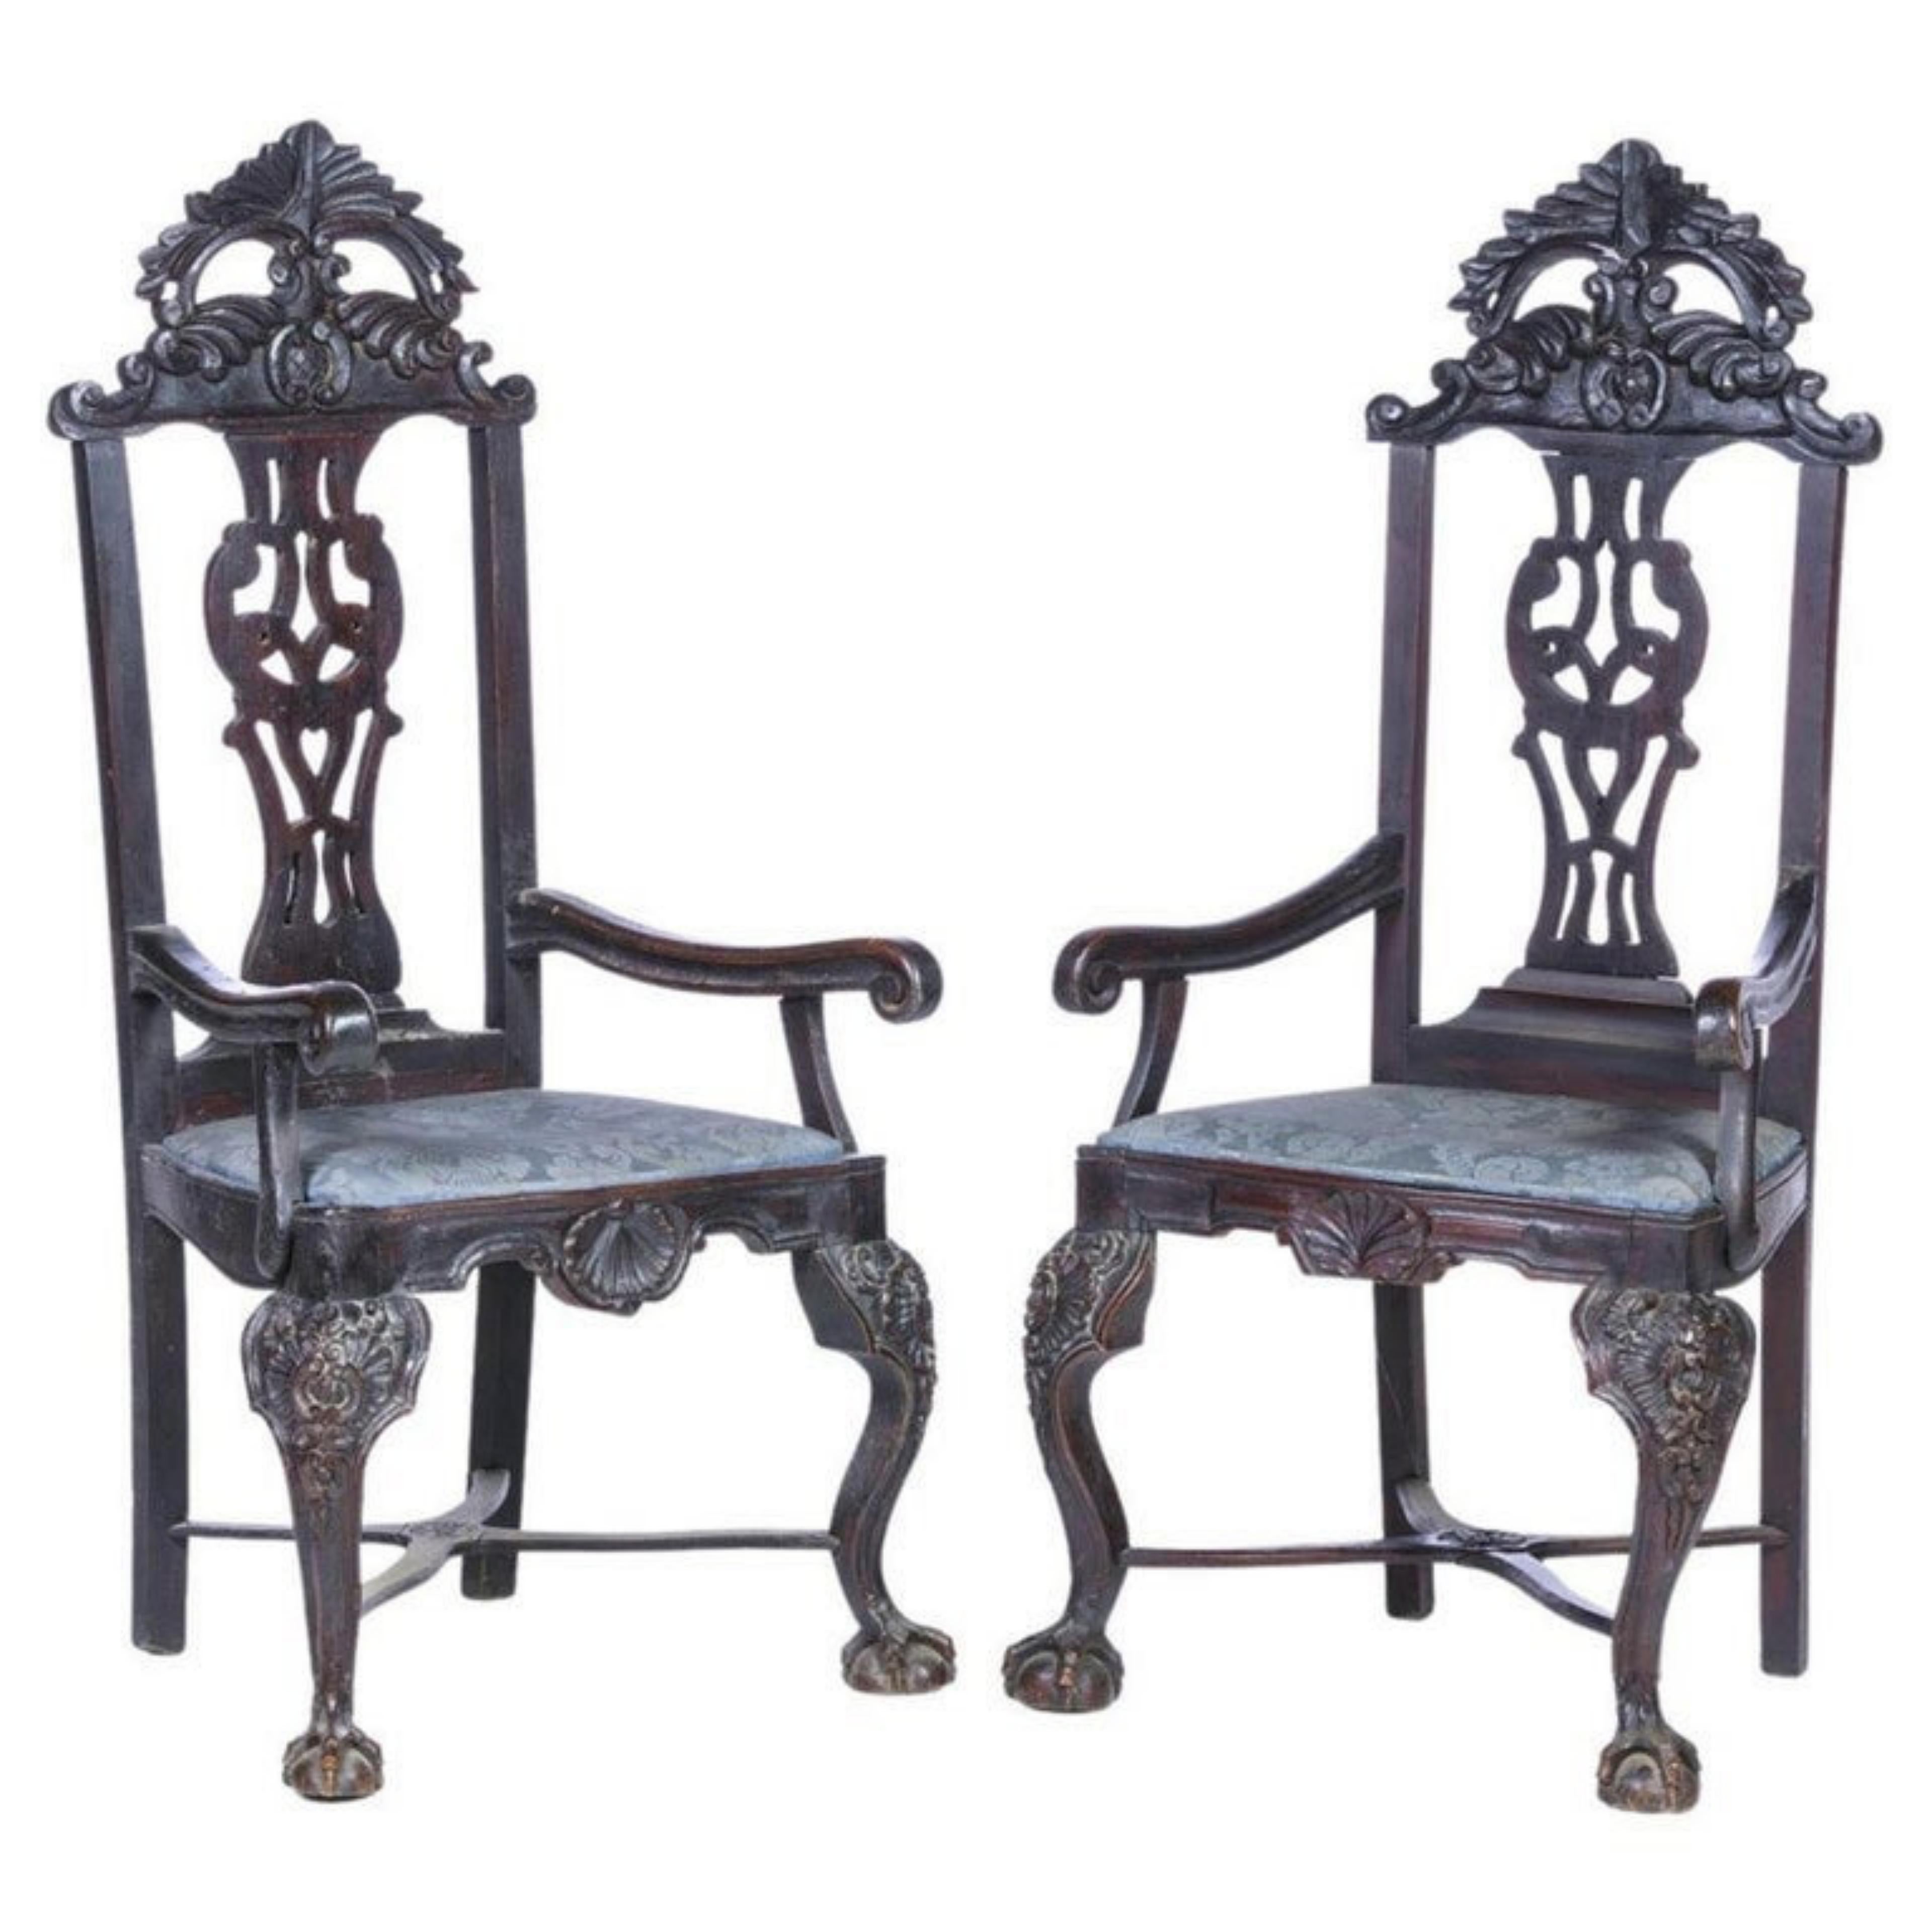 Paire de fauteuils
Portugais, XIXe siècle, en bois de châtaignier sculpté. Dossier ouvert, décoré de motifs végétaux, se terminant par des pieds griffes et une boule. Sièges rembourrés.
Dim. : 131 x 63 x 46 cm.